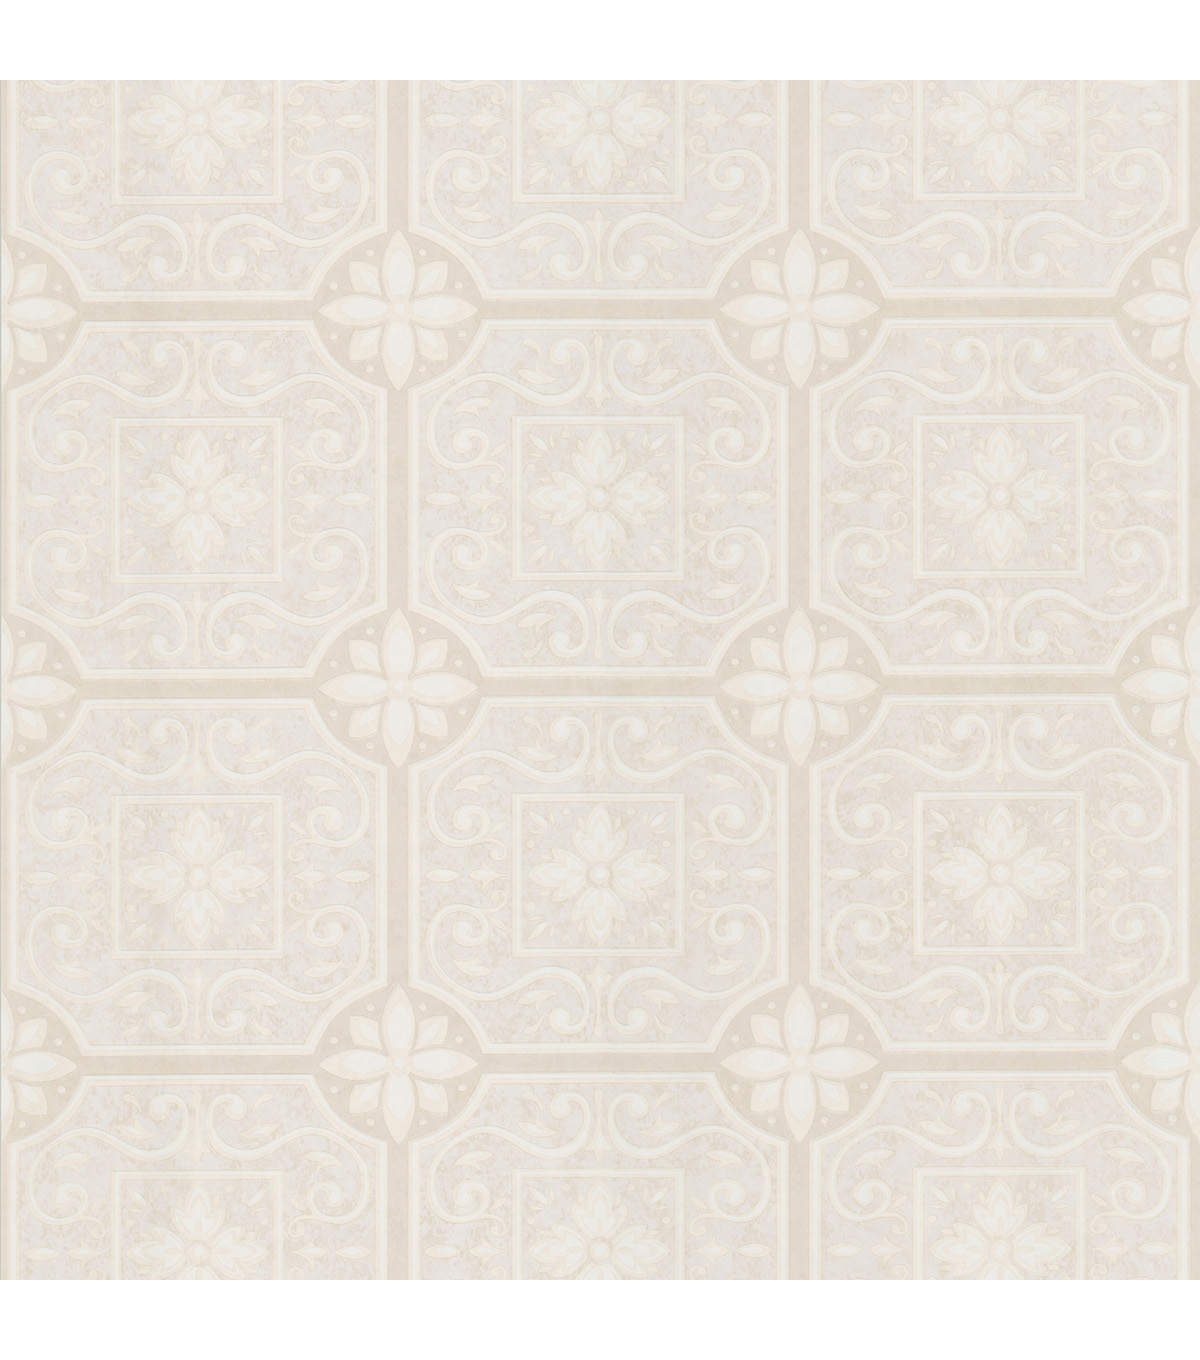  Ceiling Tiles Wallpaper SampleVictorianne Cream Tin Ceiling Tiles